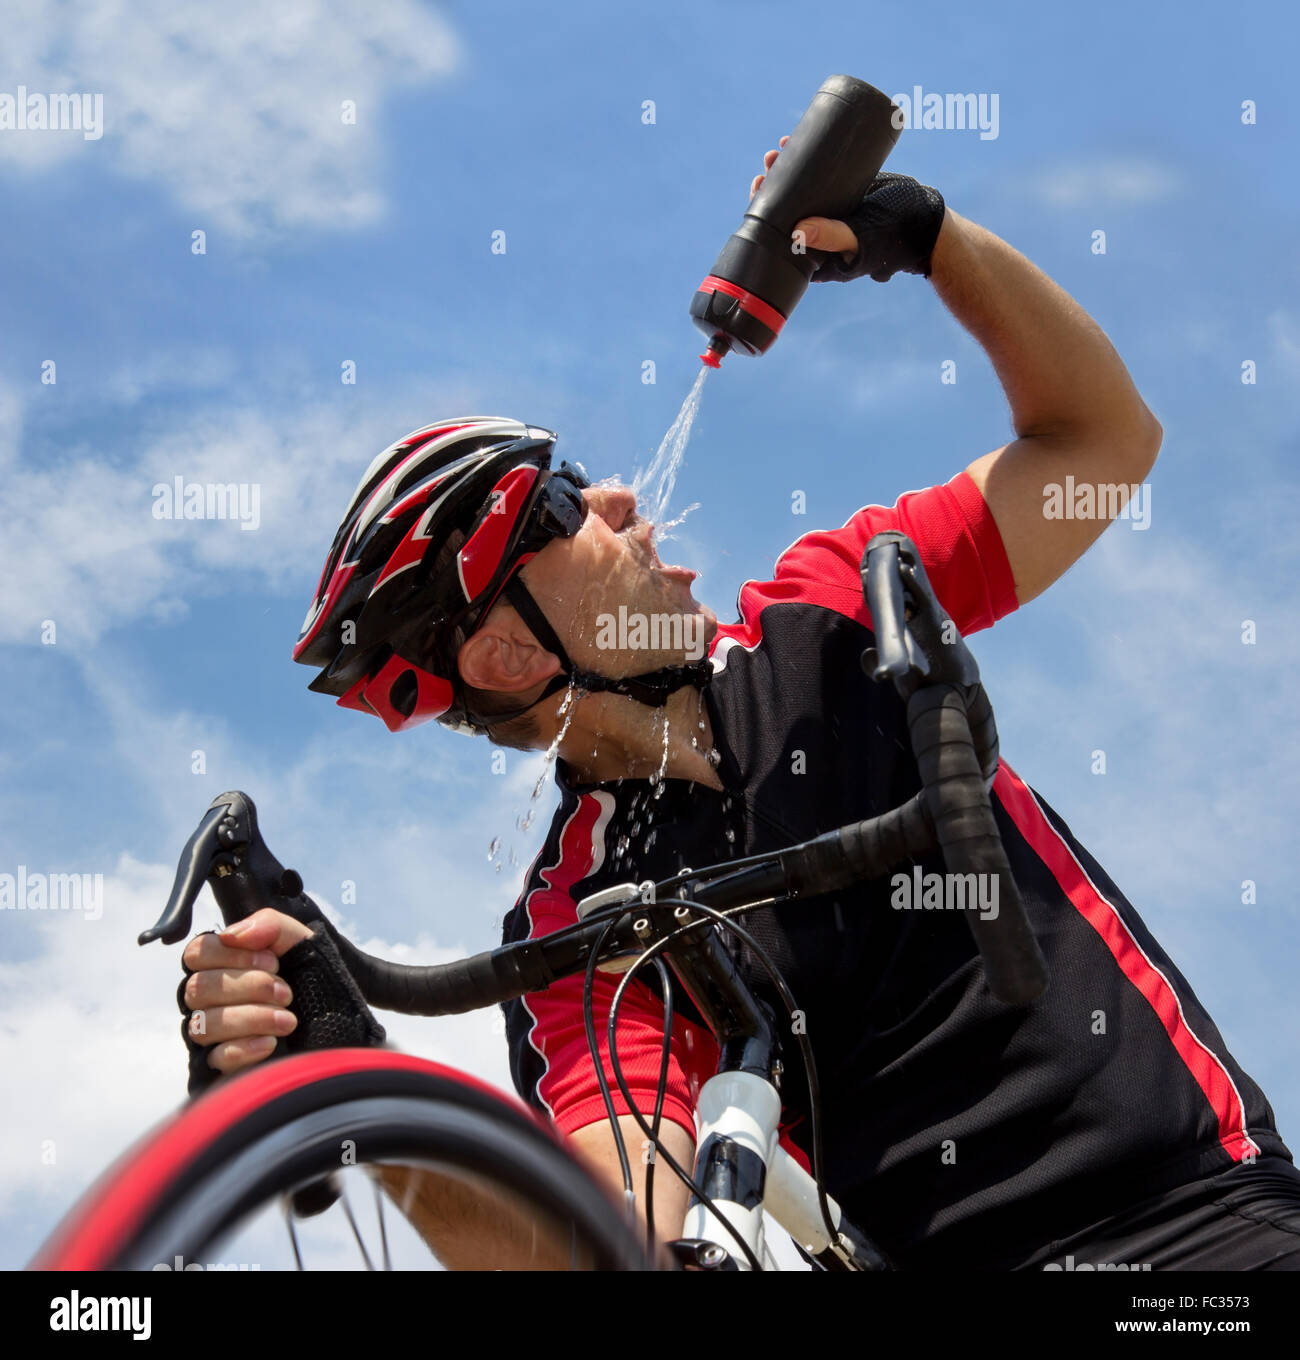 Une bouteille de cycliste actualise alors que rouler à vélo Banque D'Images